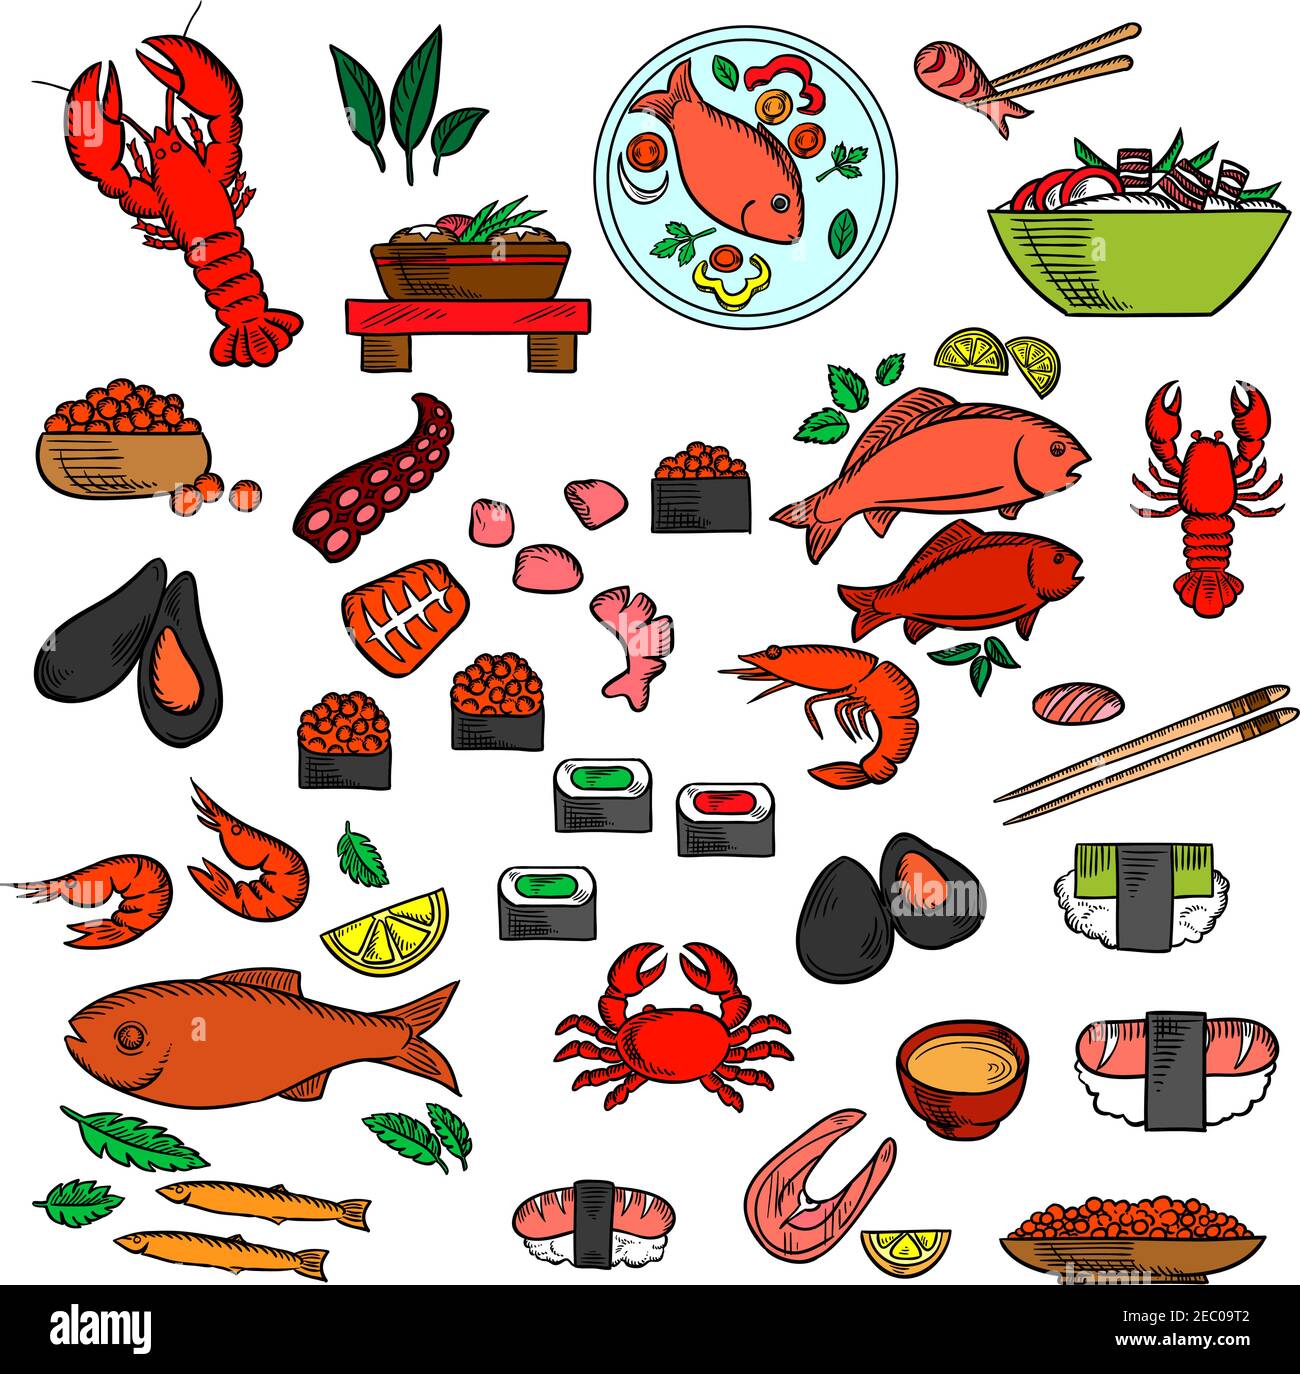 Meeresfrüchte, Fisch und Delikatessen Sushi und roten Kaviar, Krabben und Garnelen, Hummer und Austern, Muscheln und Oktopus, Essstäbchen und Lachs Steak, Fische und Stock Vektor